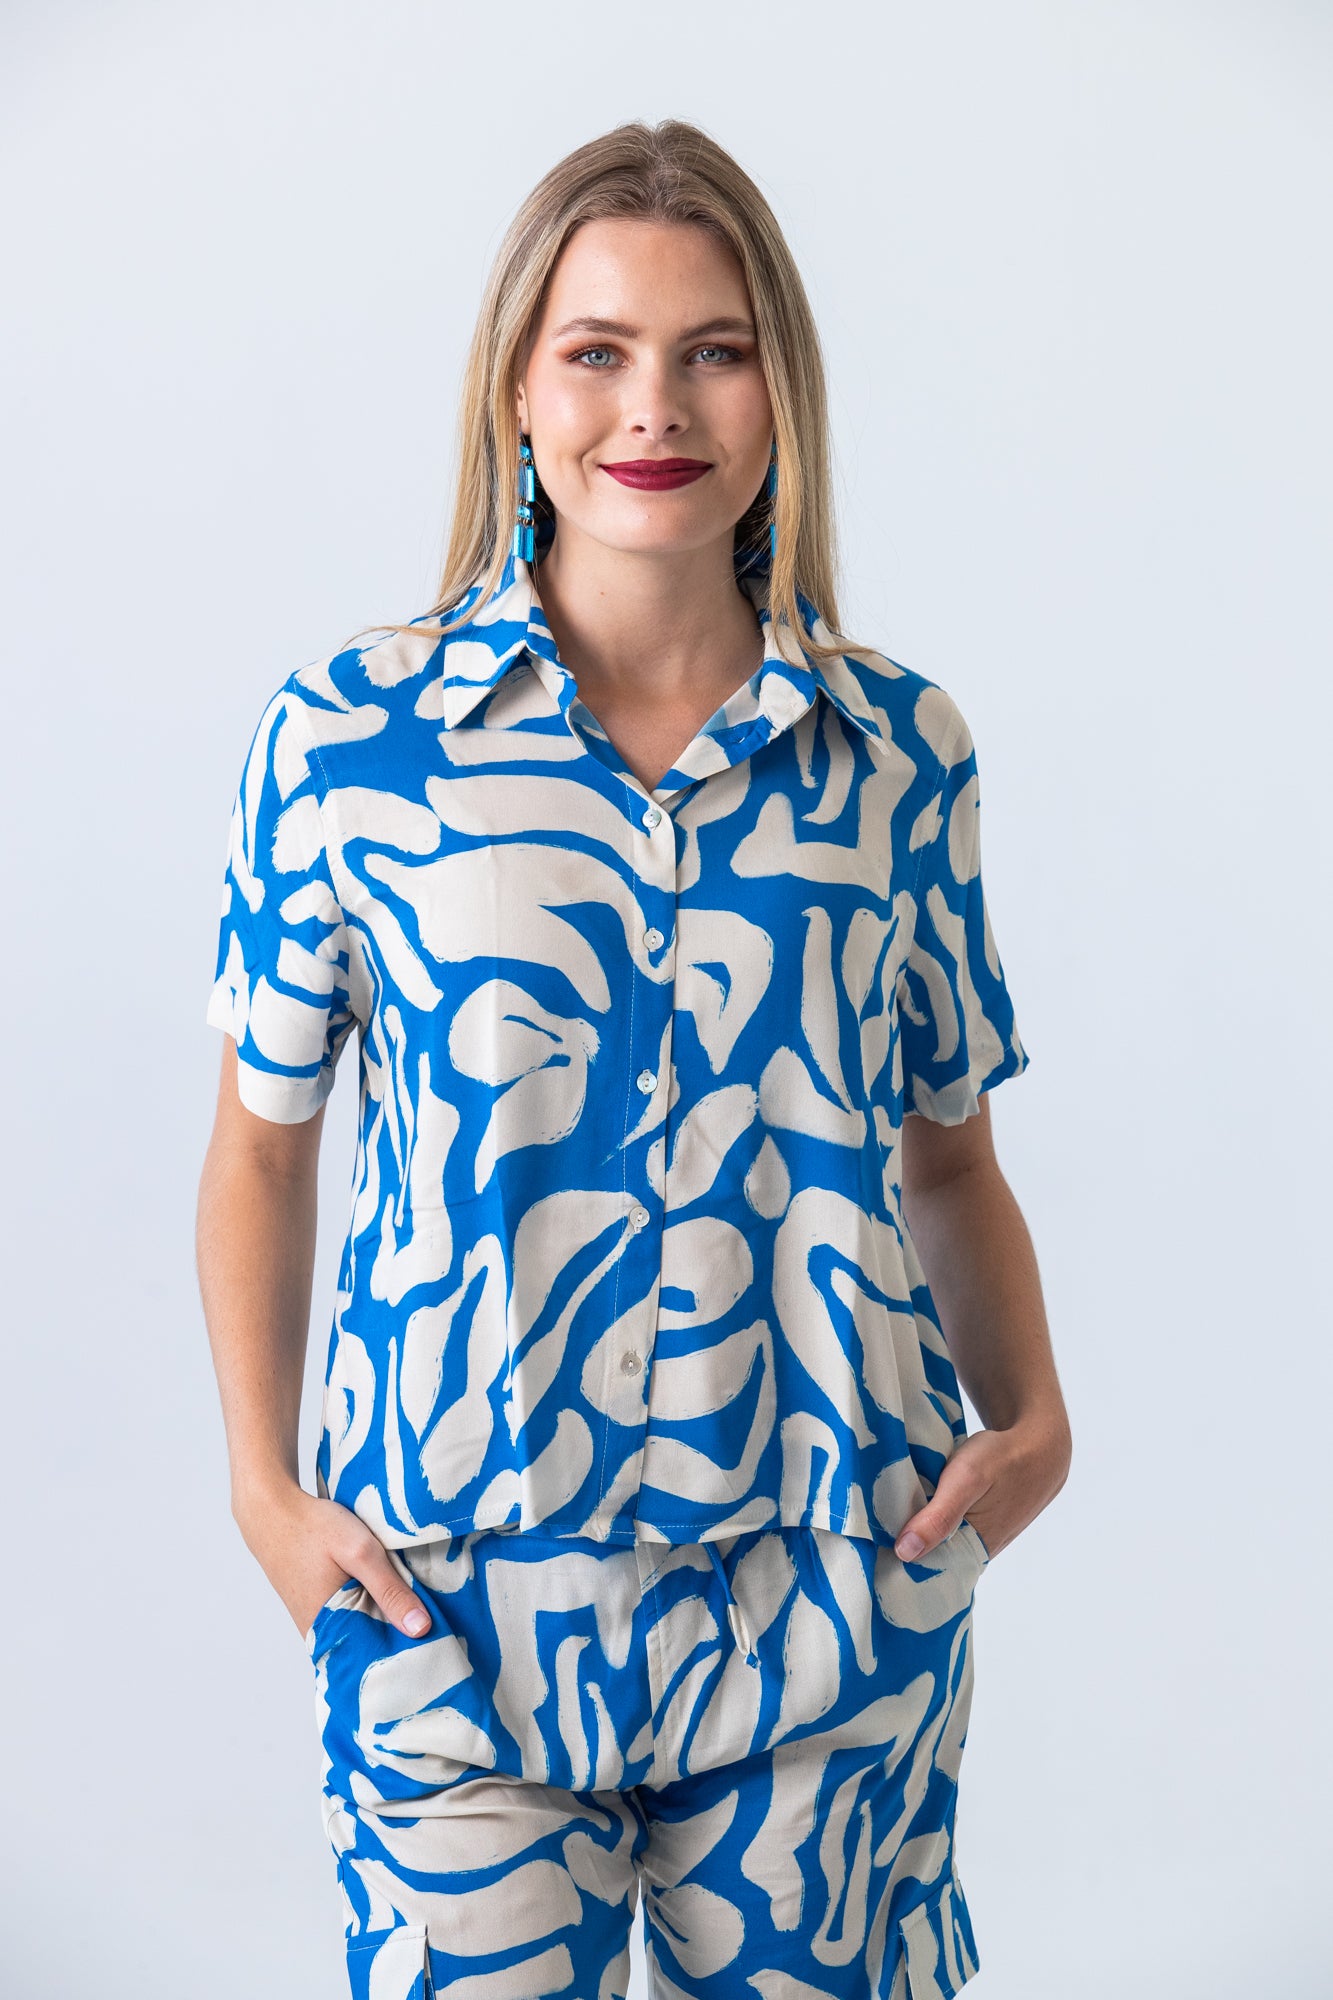 Bermuda Shirt - Blue and White